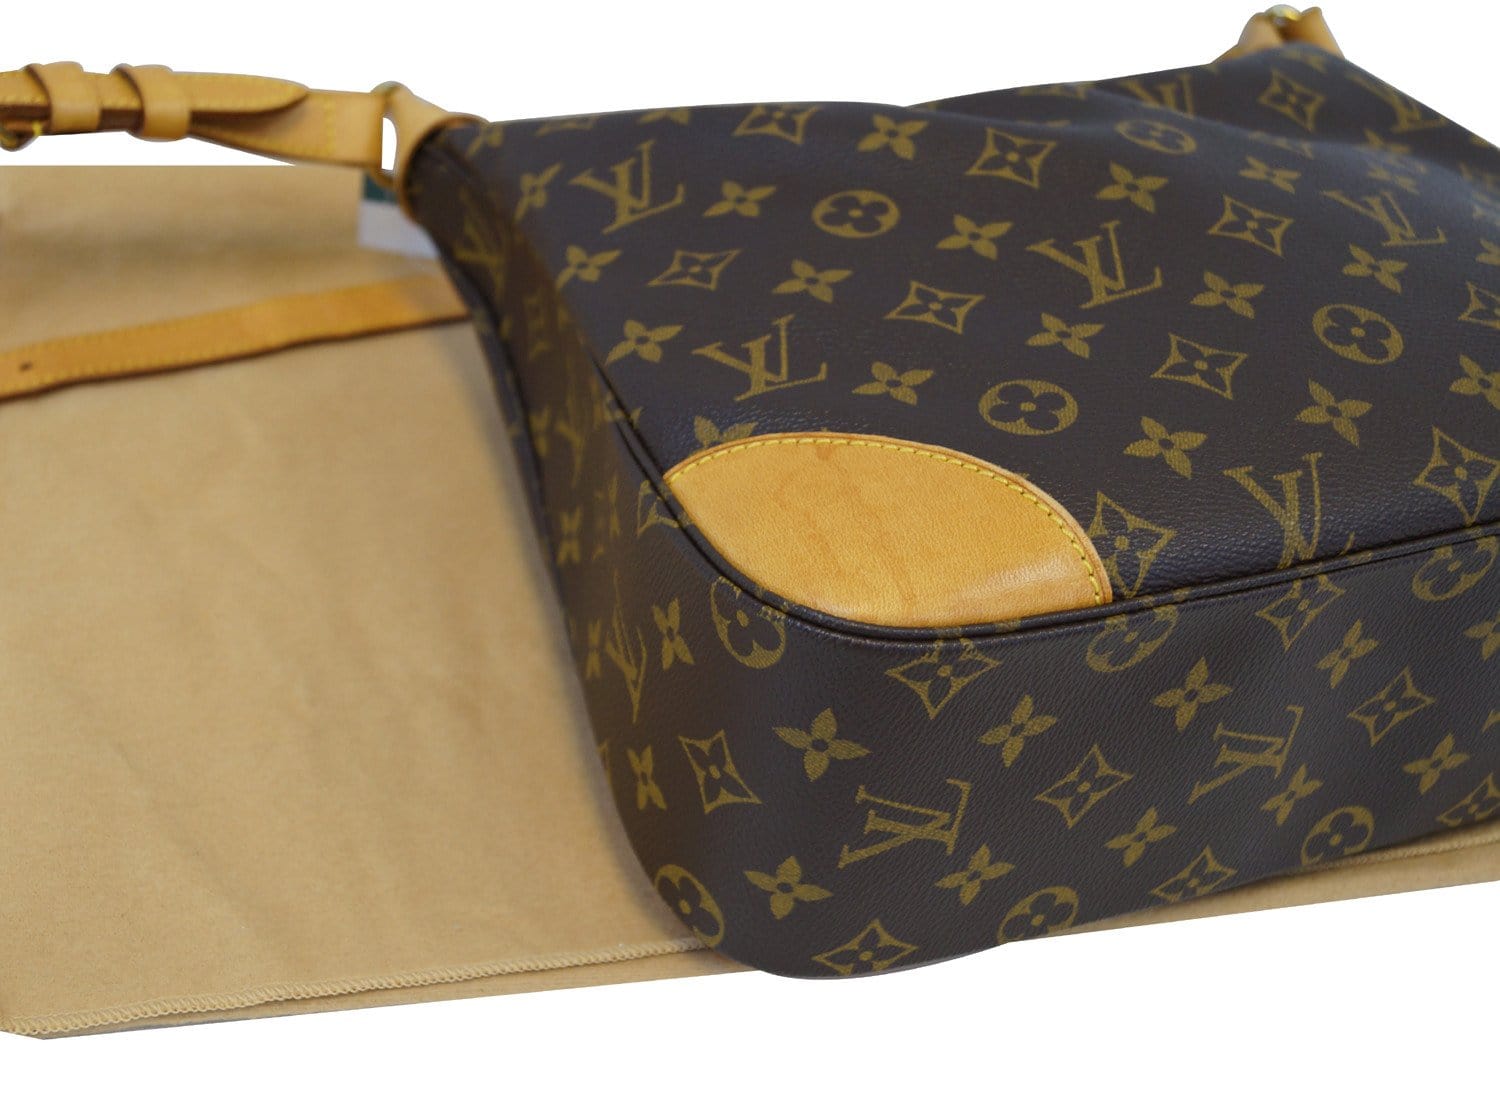 Louis Vuitton 2002 Pre-owned Little Boulogne Shoulder Bag